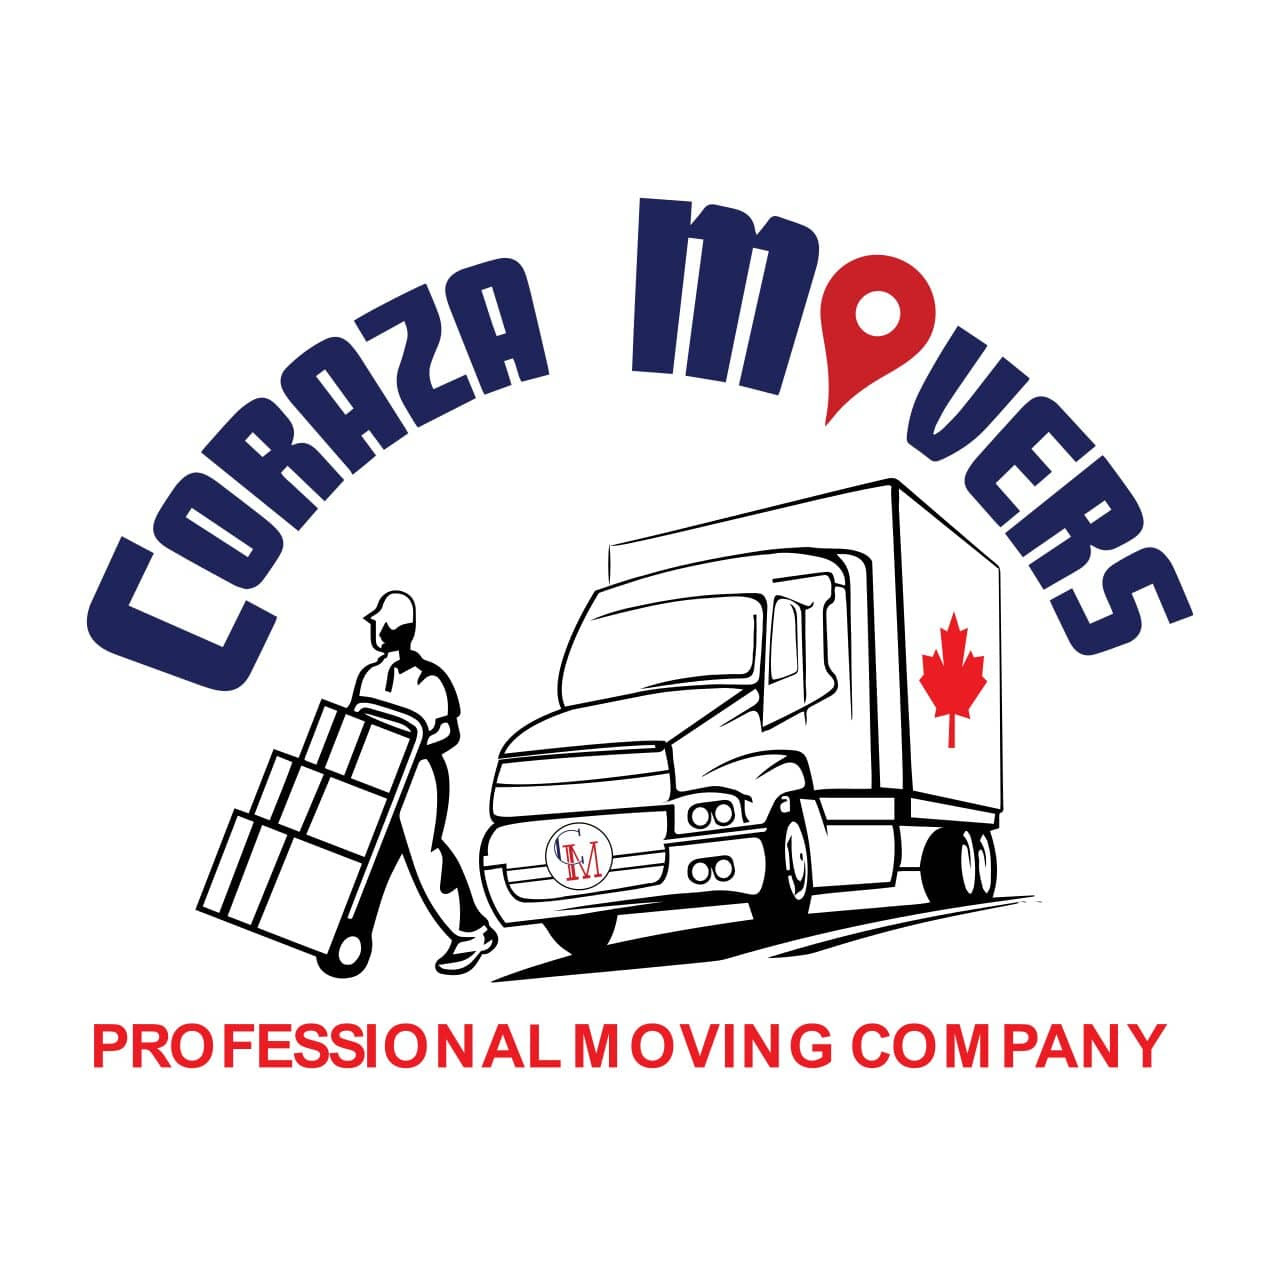 Coraza Movers's logo